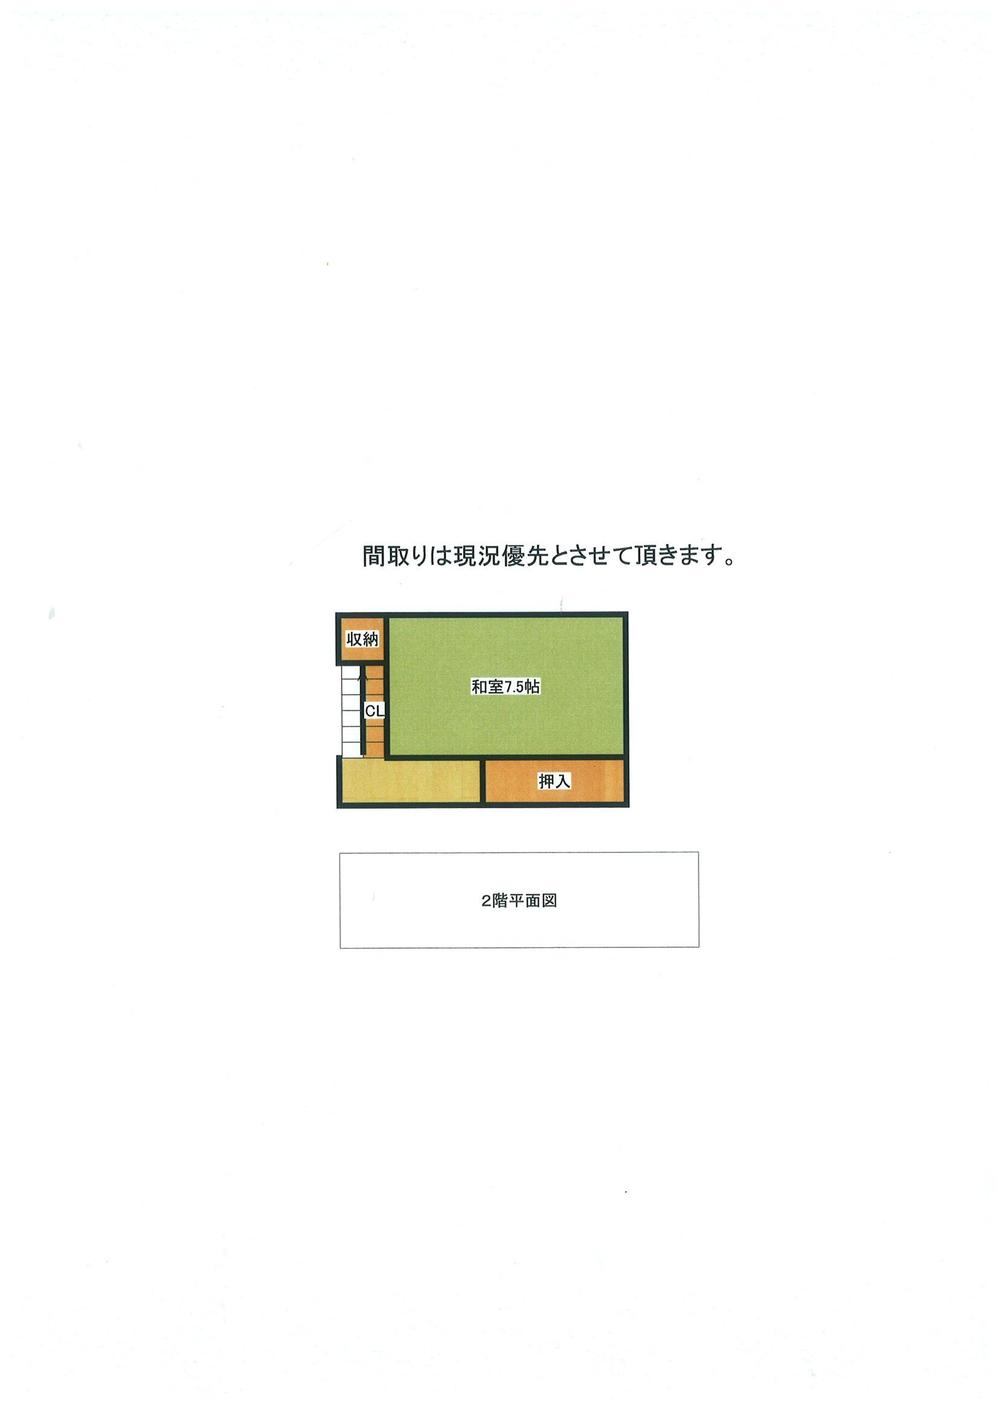 Floor plan. 5,980,000 yen, 5K, Land area 214.87 sq m , Building area 113 sq m 2 floor